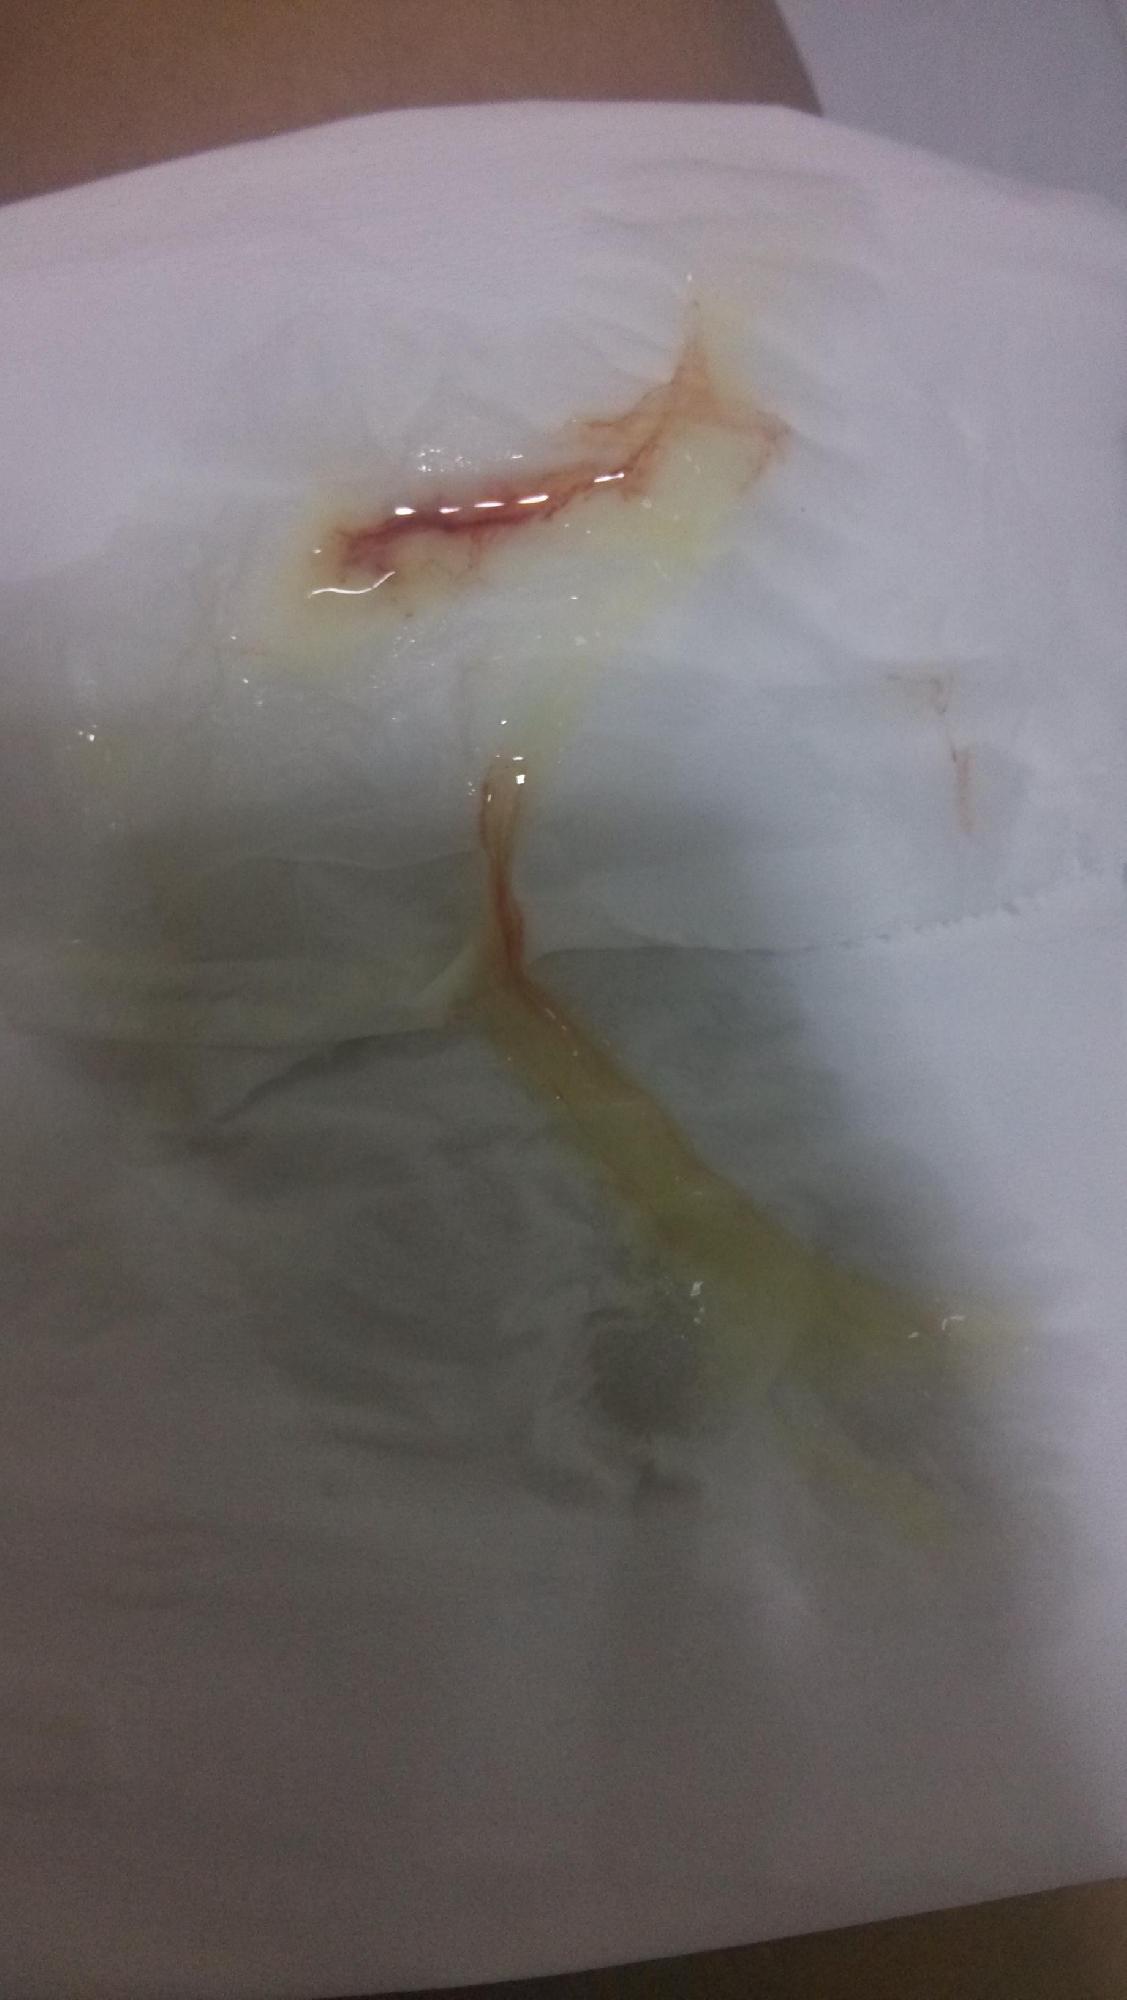 排卵期白带带血的图片图片